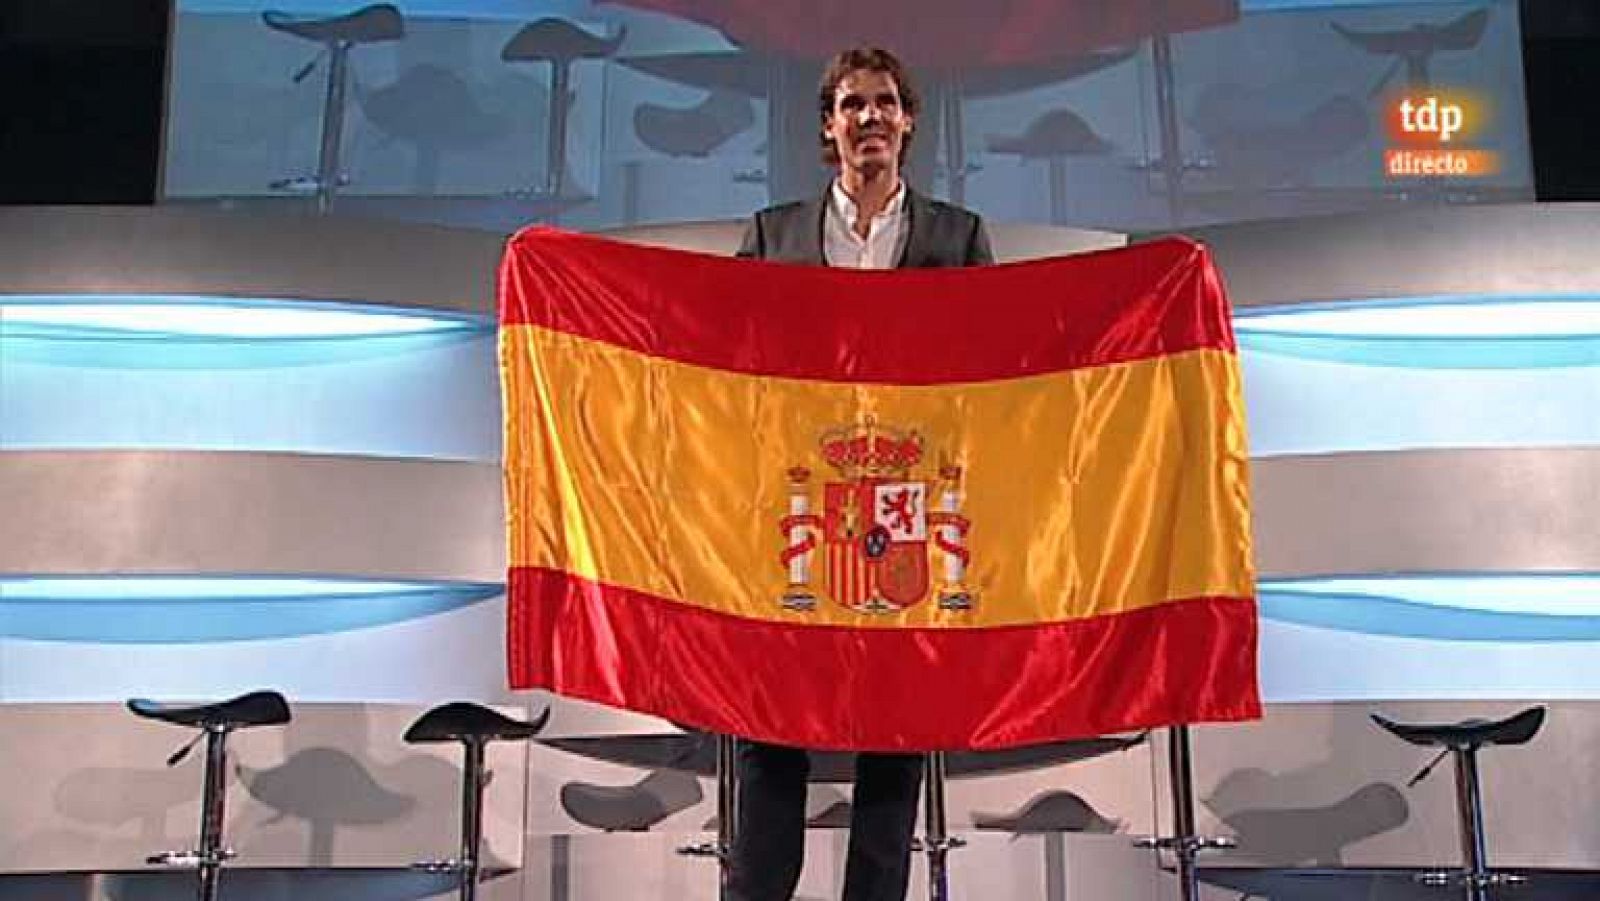 Londres 2012 - Presentación de Rafa Nadal como abanderado del equipo olímpico español - Ver ahora